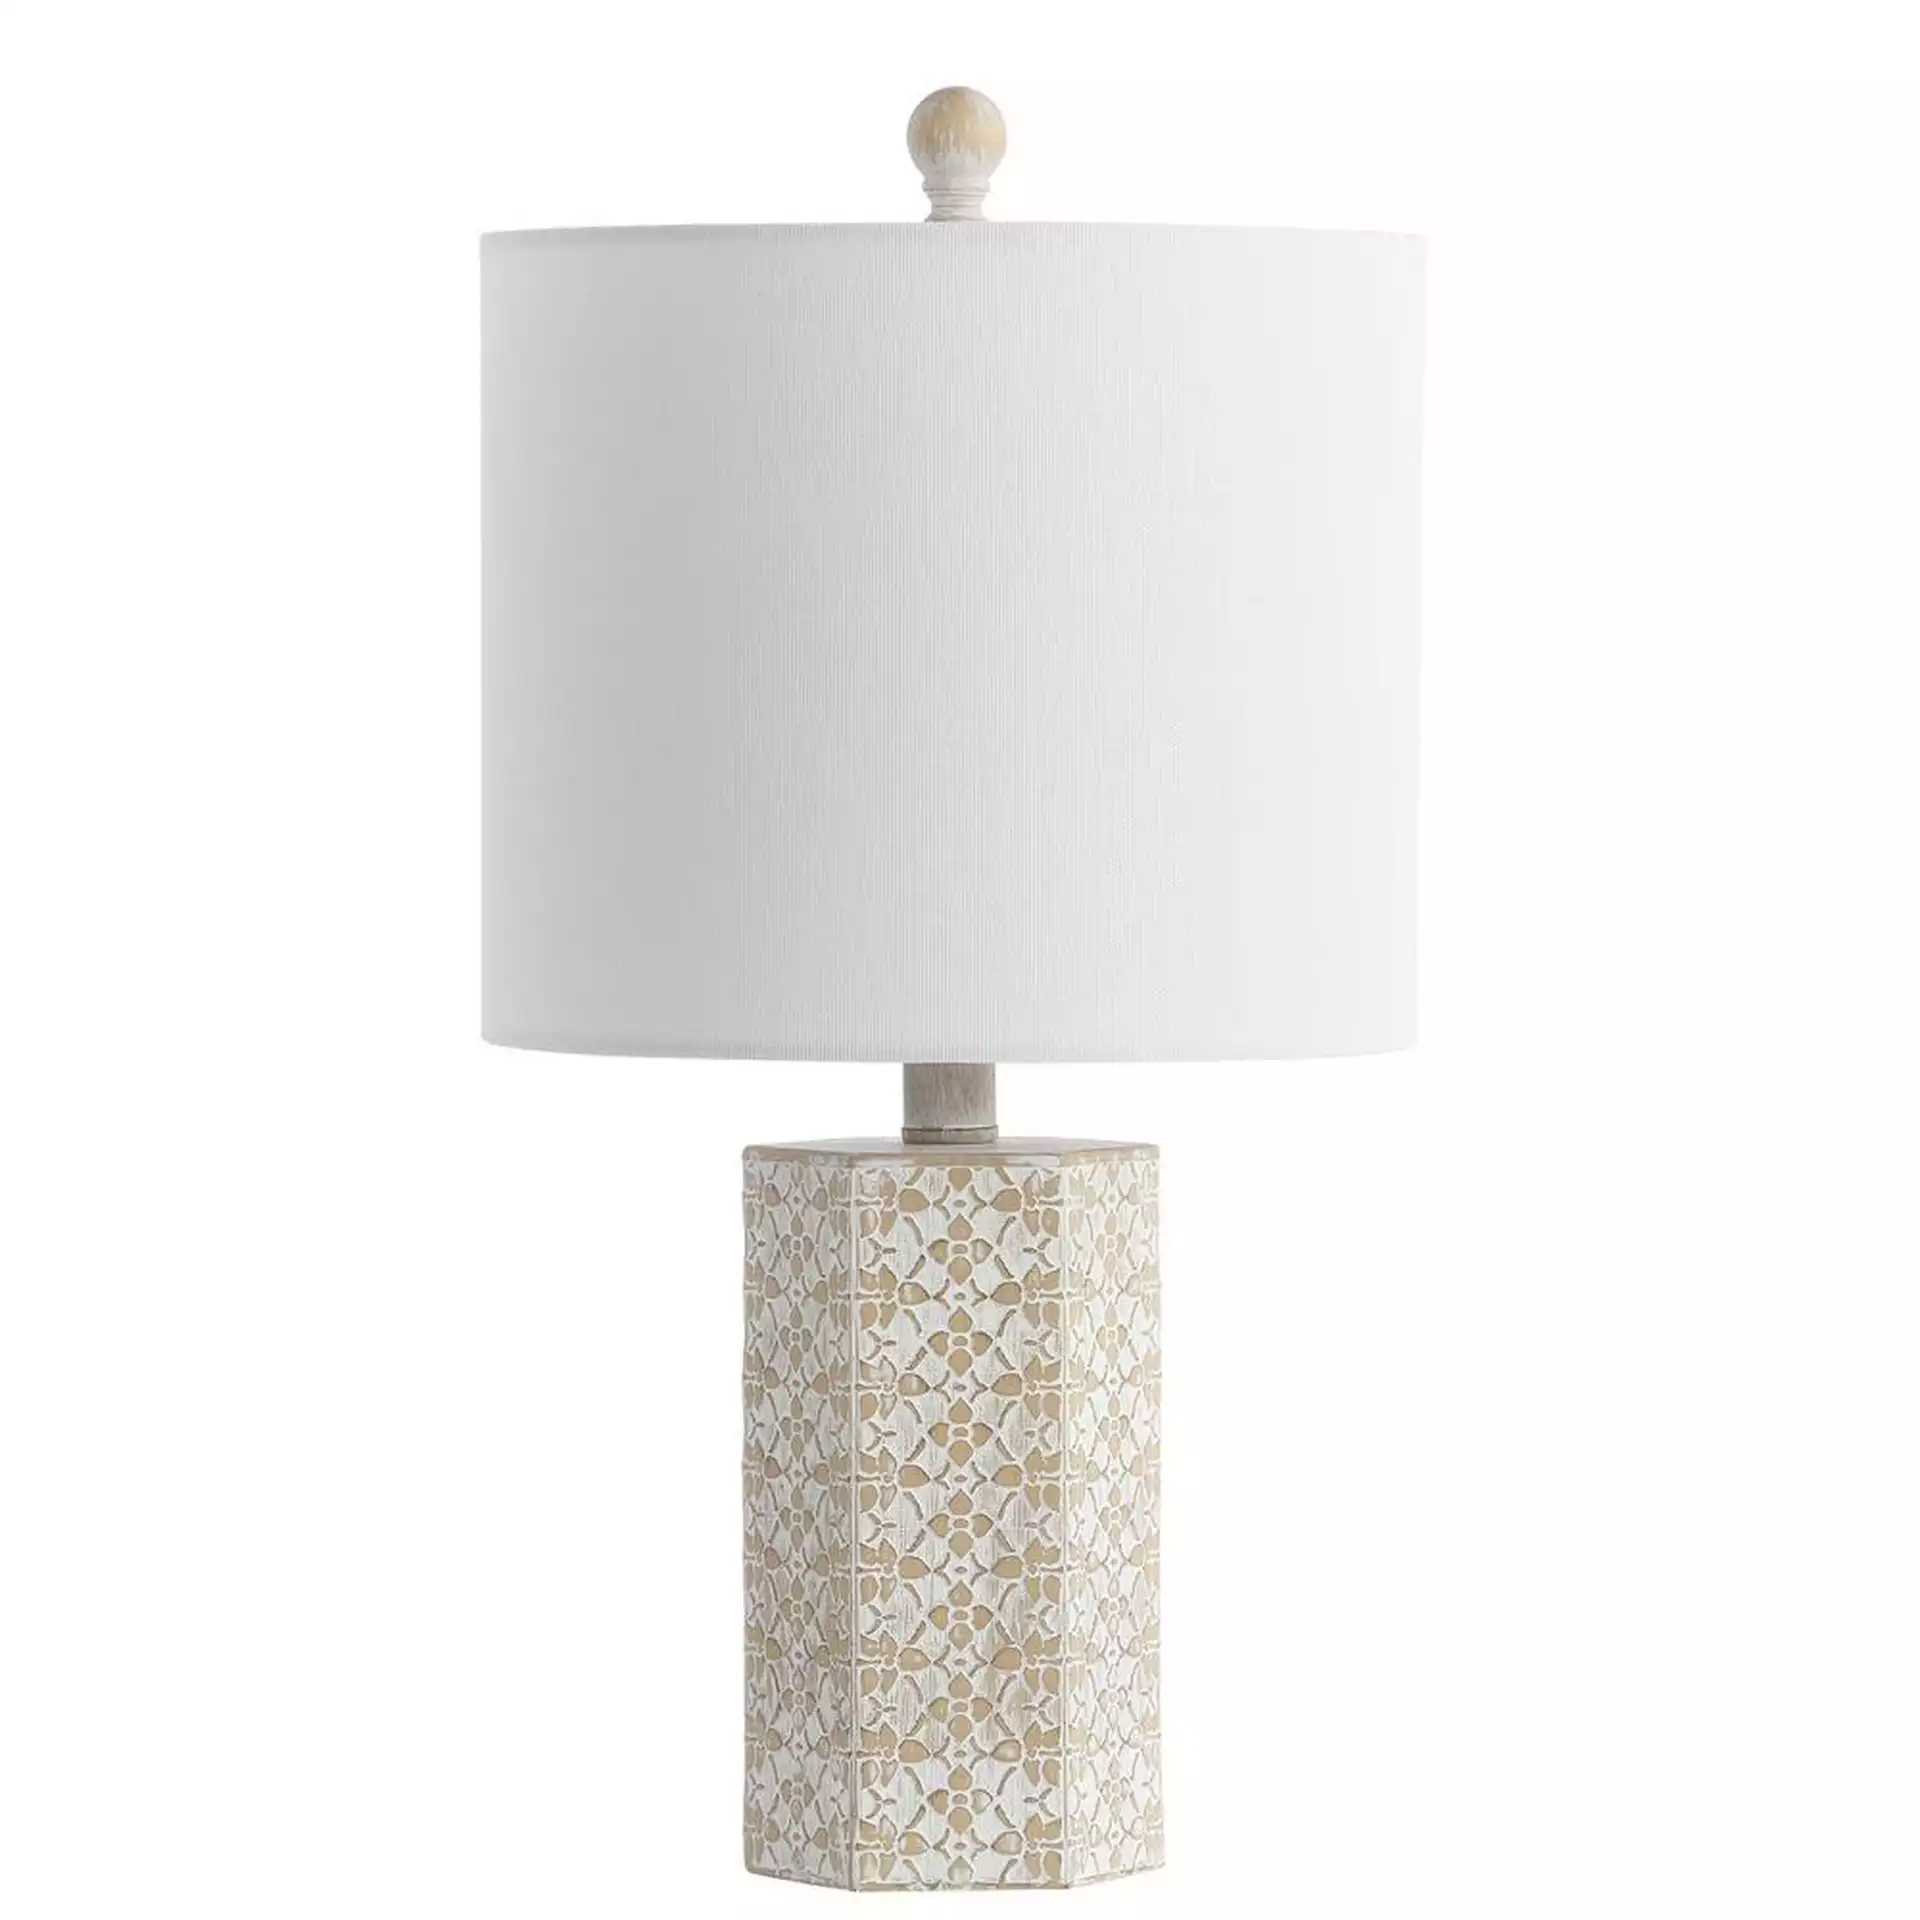 Makayla Table Lamp, Beige, 18.75"